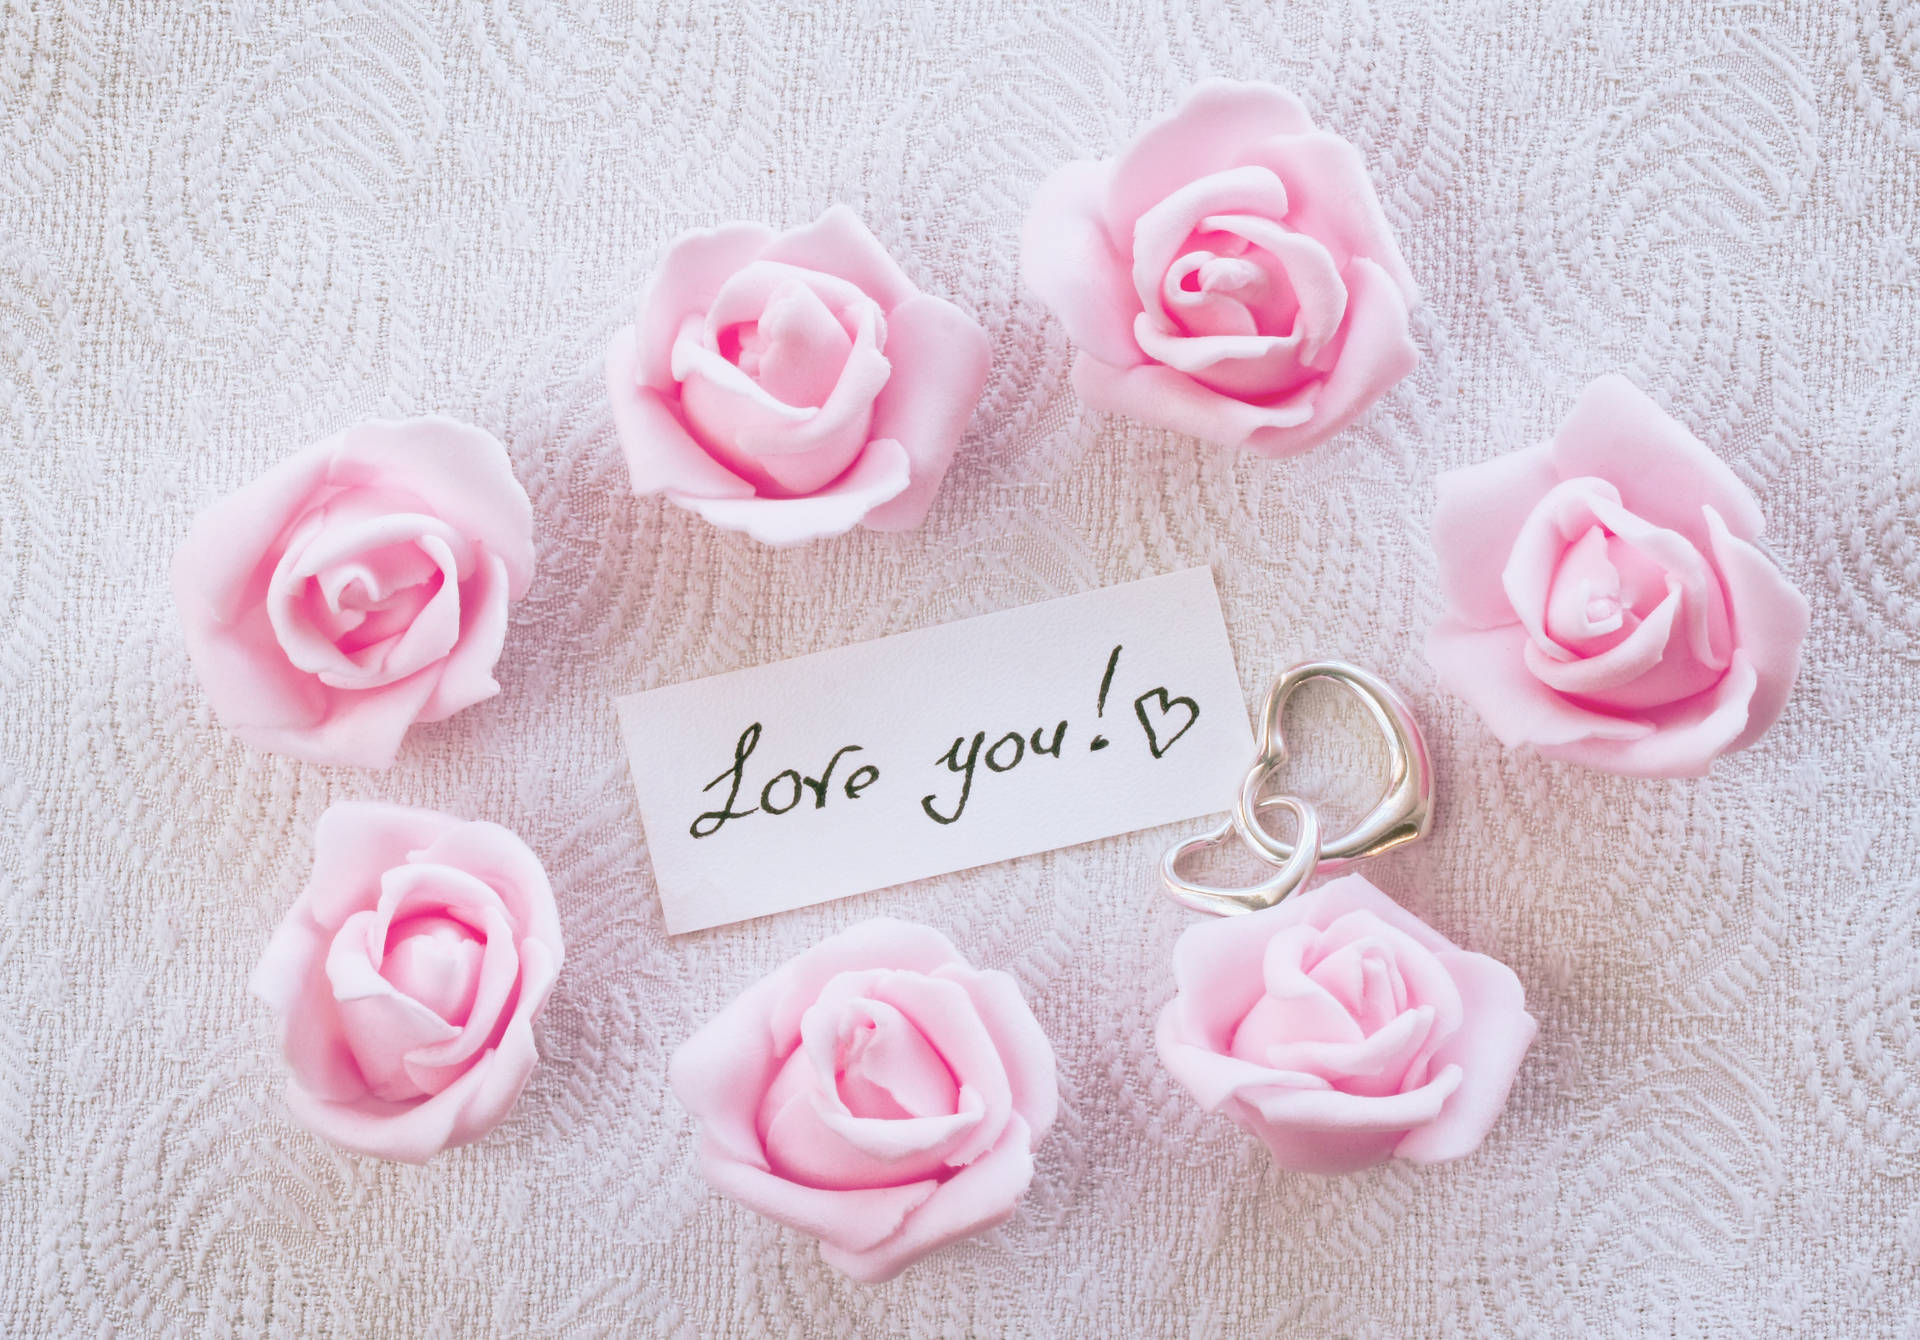 Romantic Rose Wallpaper